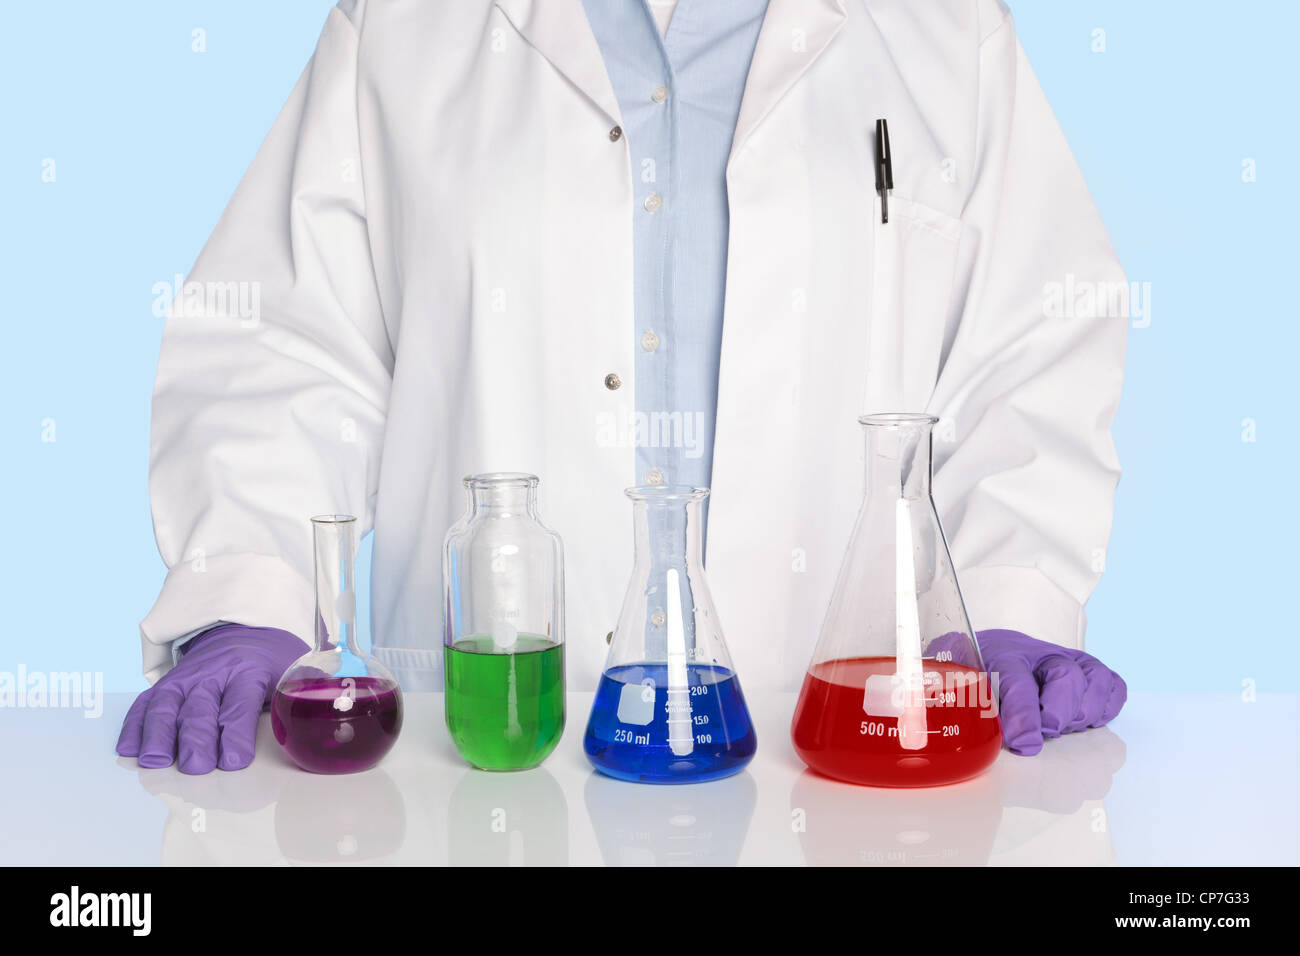 Foto de un profesor de química o científico de pie en un escritorio/contador con una fila de productos químicos Foto de stock